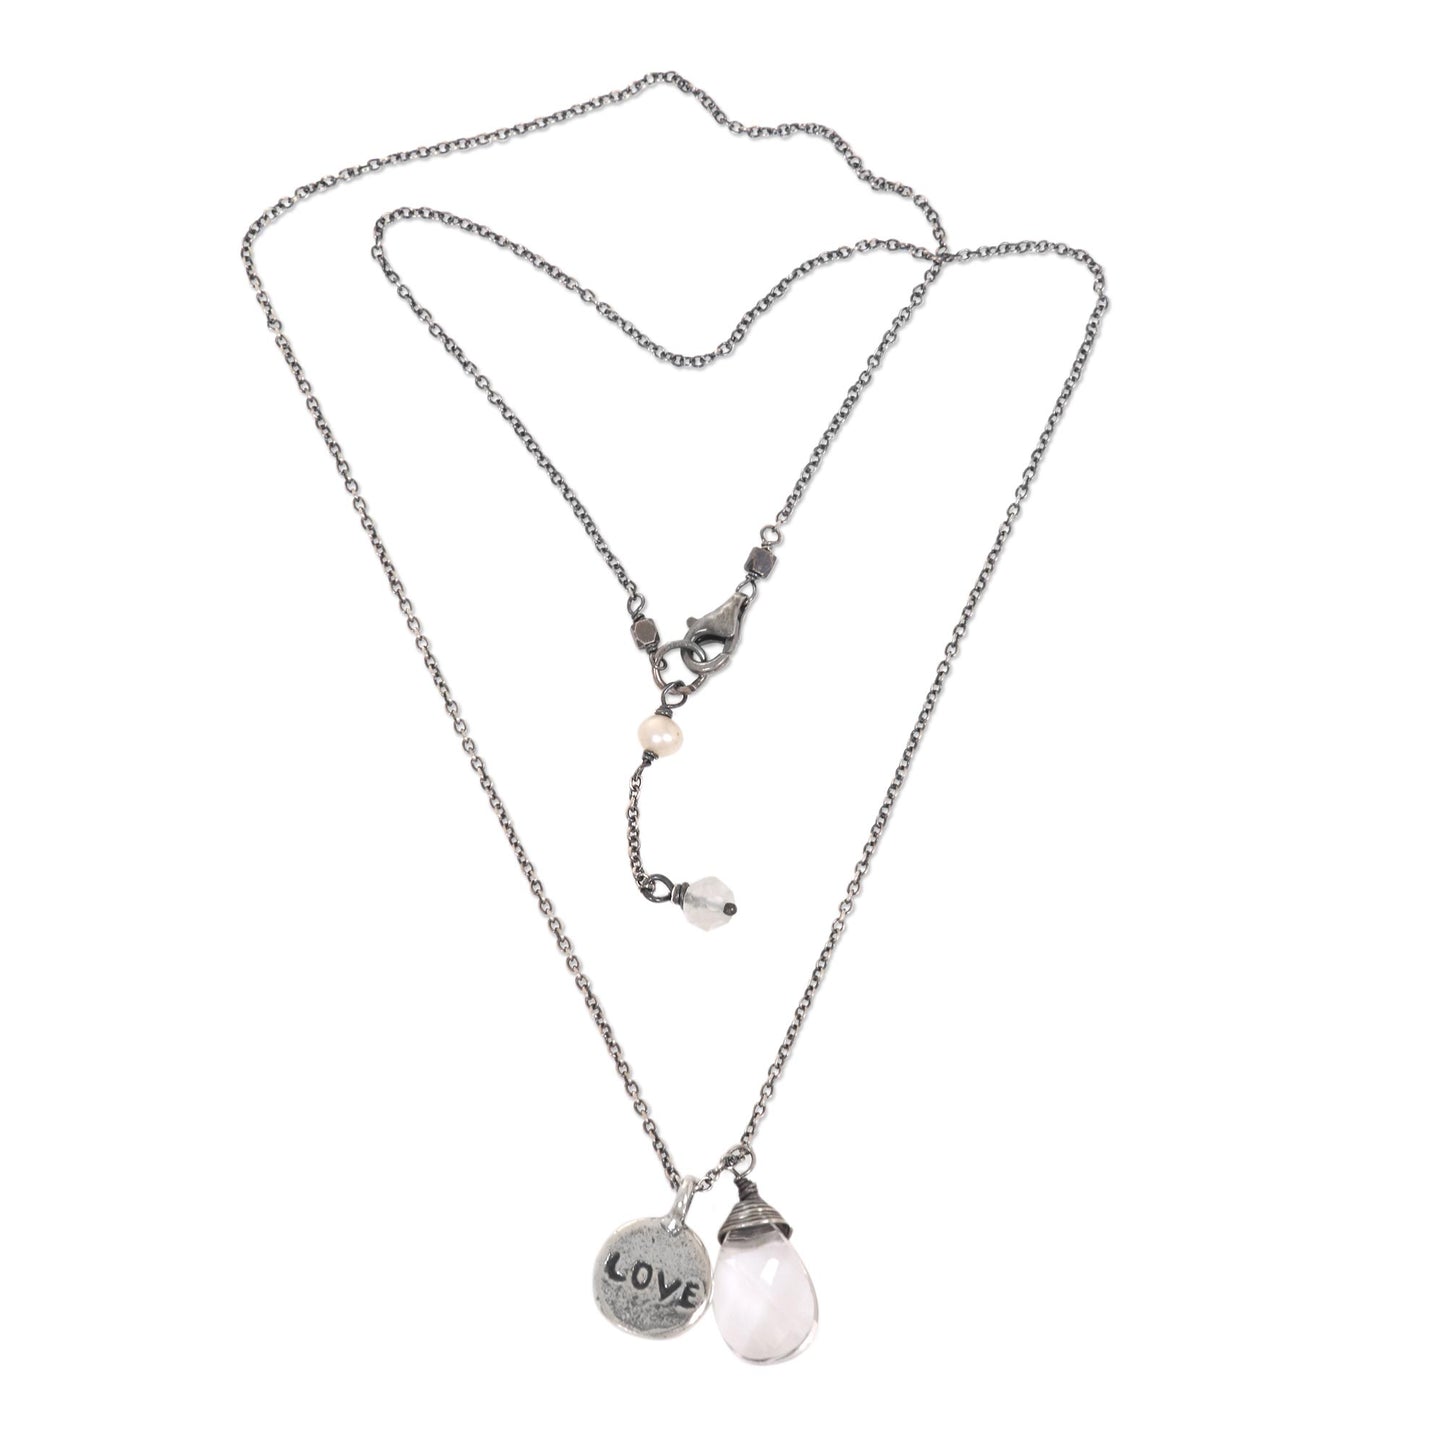 Inspiring Love Quartz & Pearl Necklace